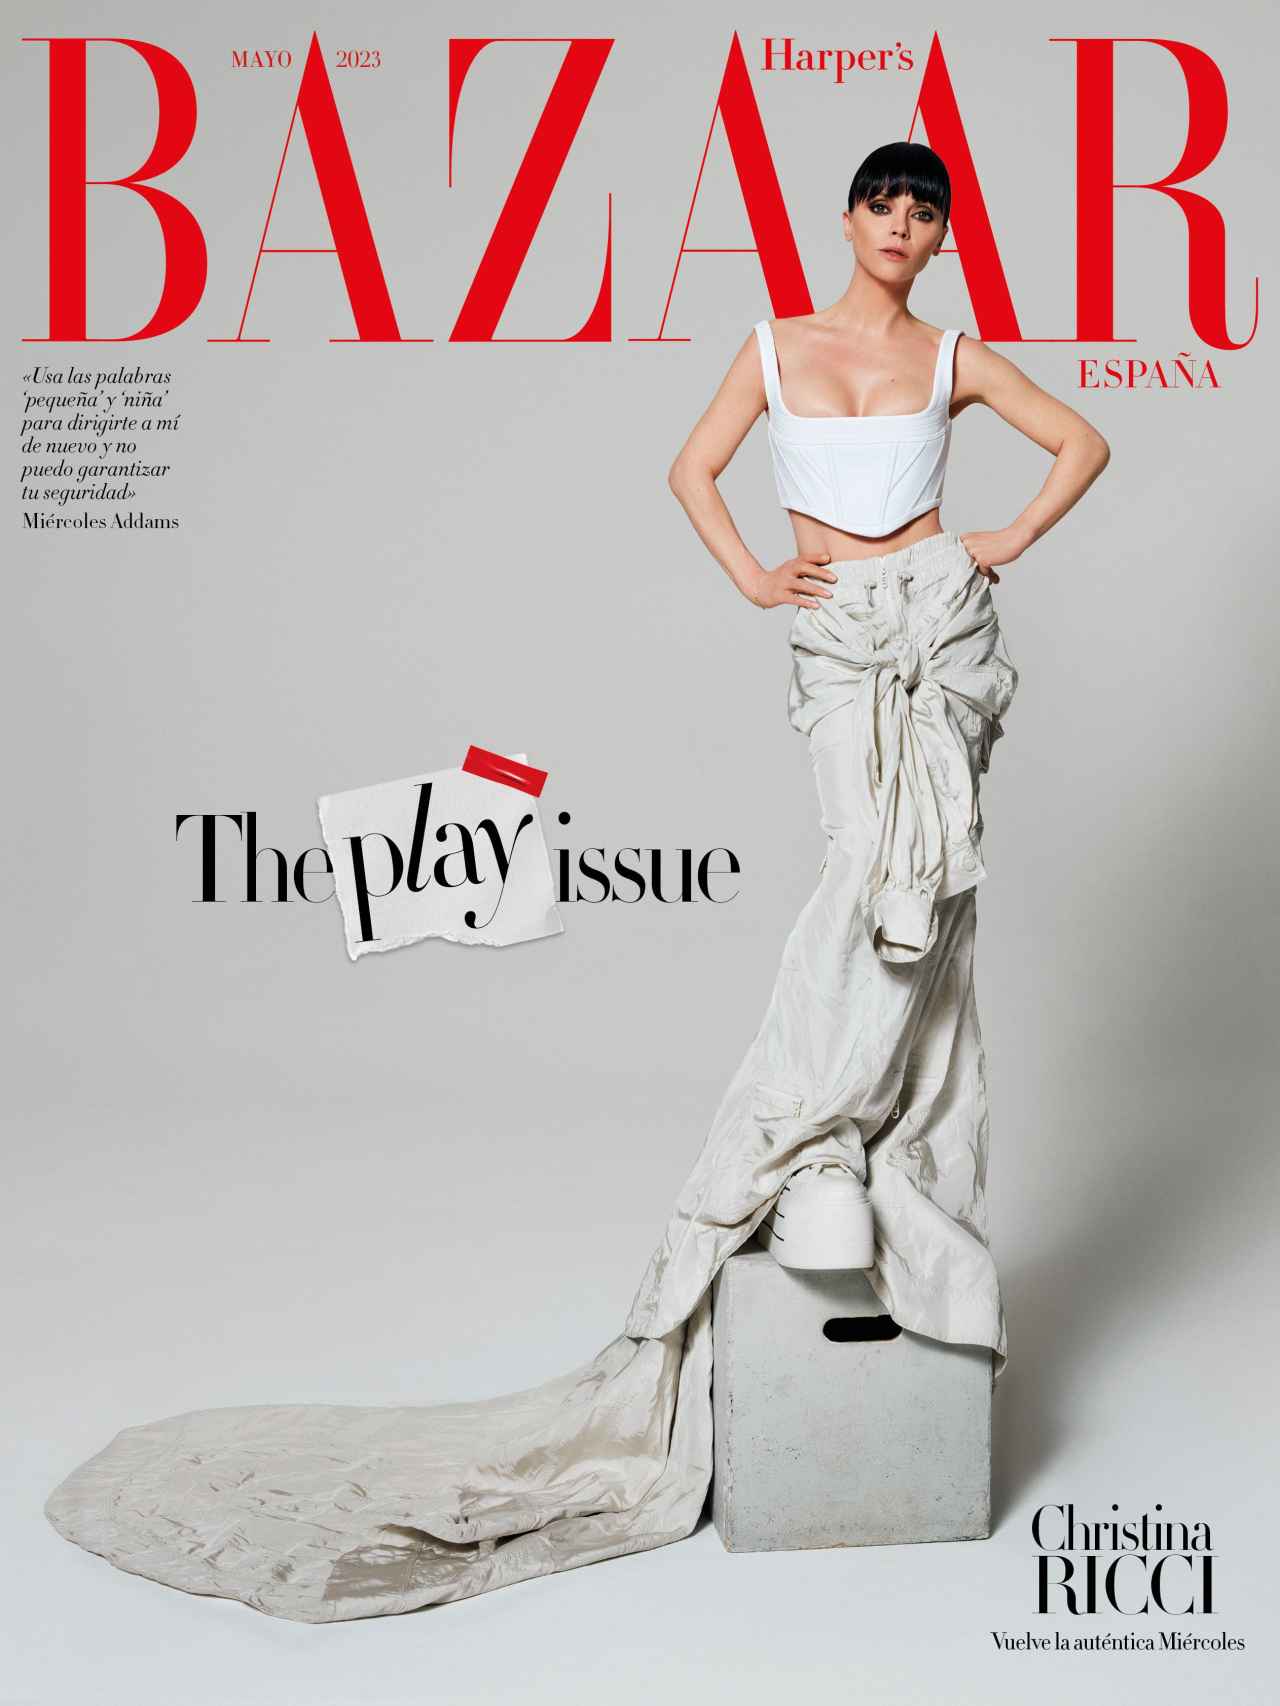 Portada Harper's Bazaar de mayo 2023.